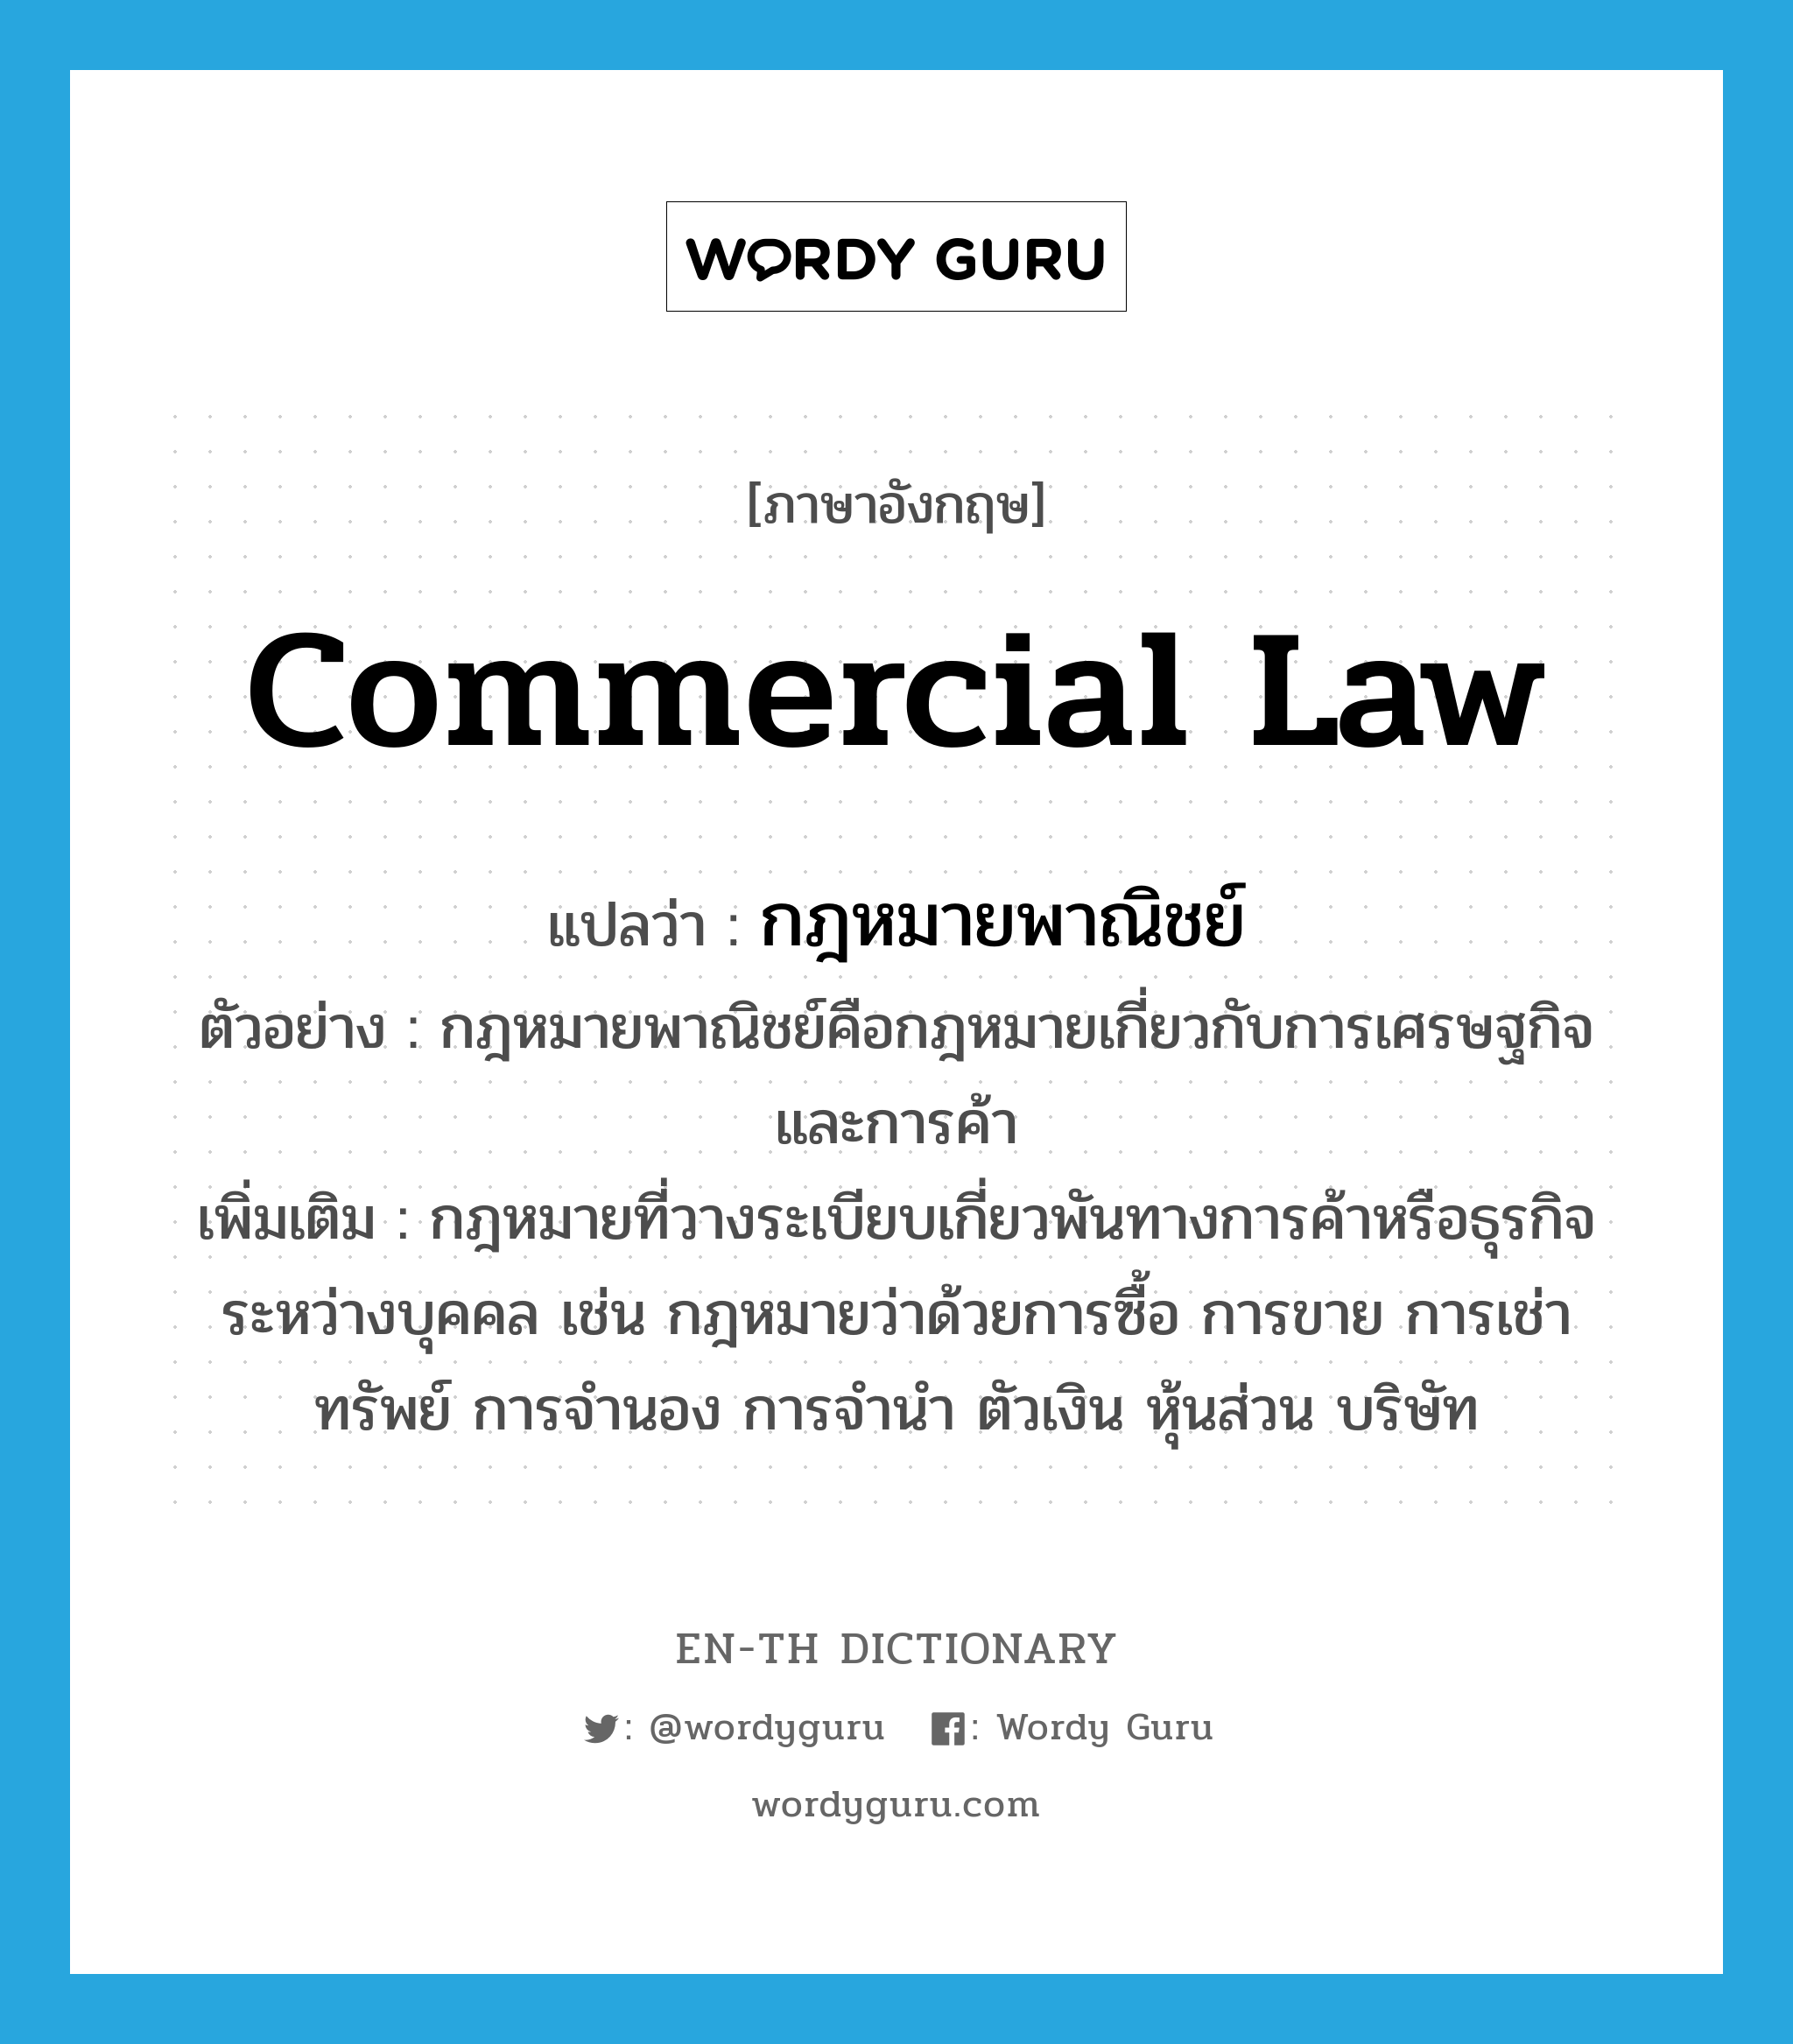 กฎหมายพาณิชย์ ภาษาอังกฤษ?, คำศัพท์ภาษาอังกฤษ กฎหมายพาณิชย์ แปลว่า commercial law ประเภท N ตัวอย่าง กฎหมายพาณิชย์คือกฎหมายเกี่ยวกับการเศรษฐกิจและการค้า เพิ่มเติม กฎหมายที่วางระเบียบเกี่ยวพันทางการค้าหรือธุรกิจระหว่างบุคคล เช่น กฎหมายว่าด้วยการซื้อ การขาย การเช่าทรัพย์ การจำนอง การจำนำ ตัวเงิน หุ้นส่วน บริษัท หมวด N